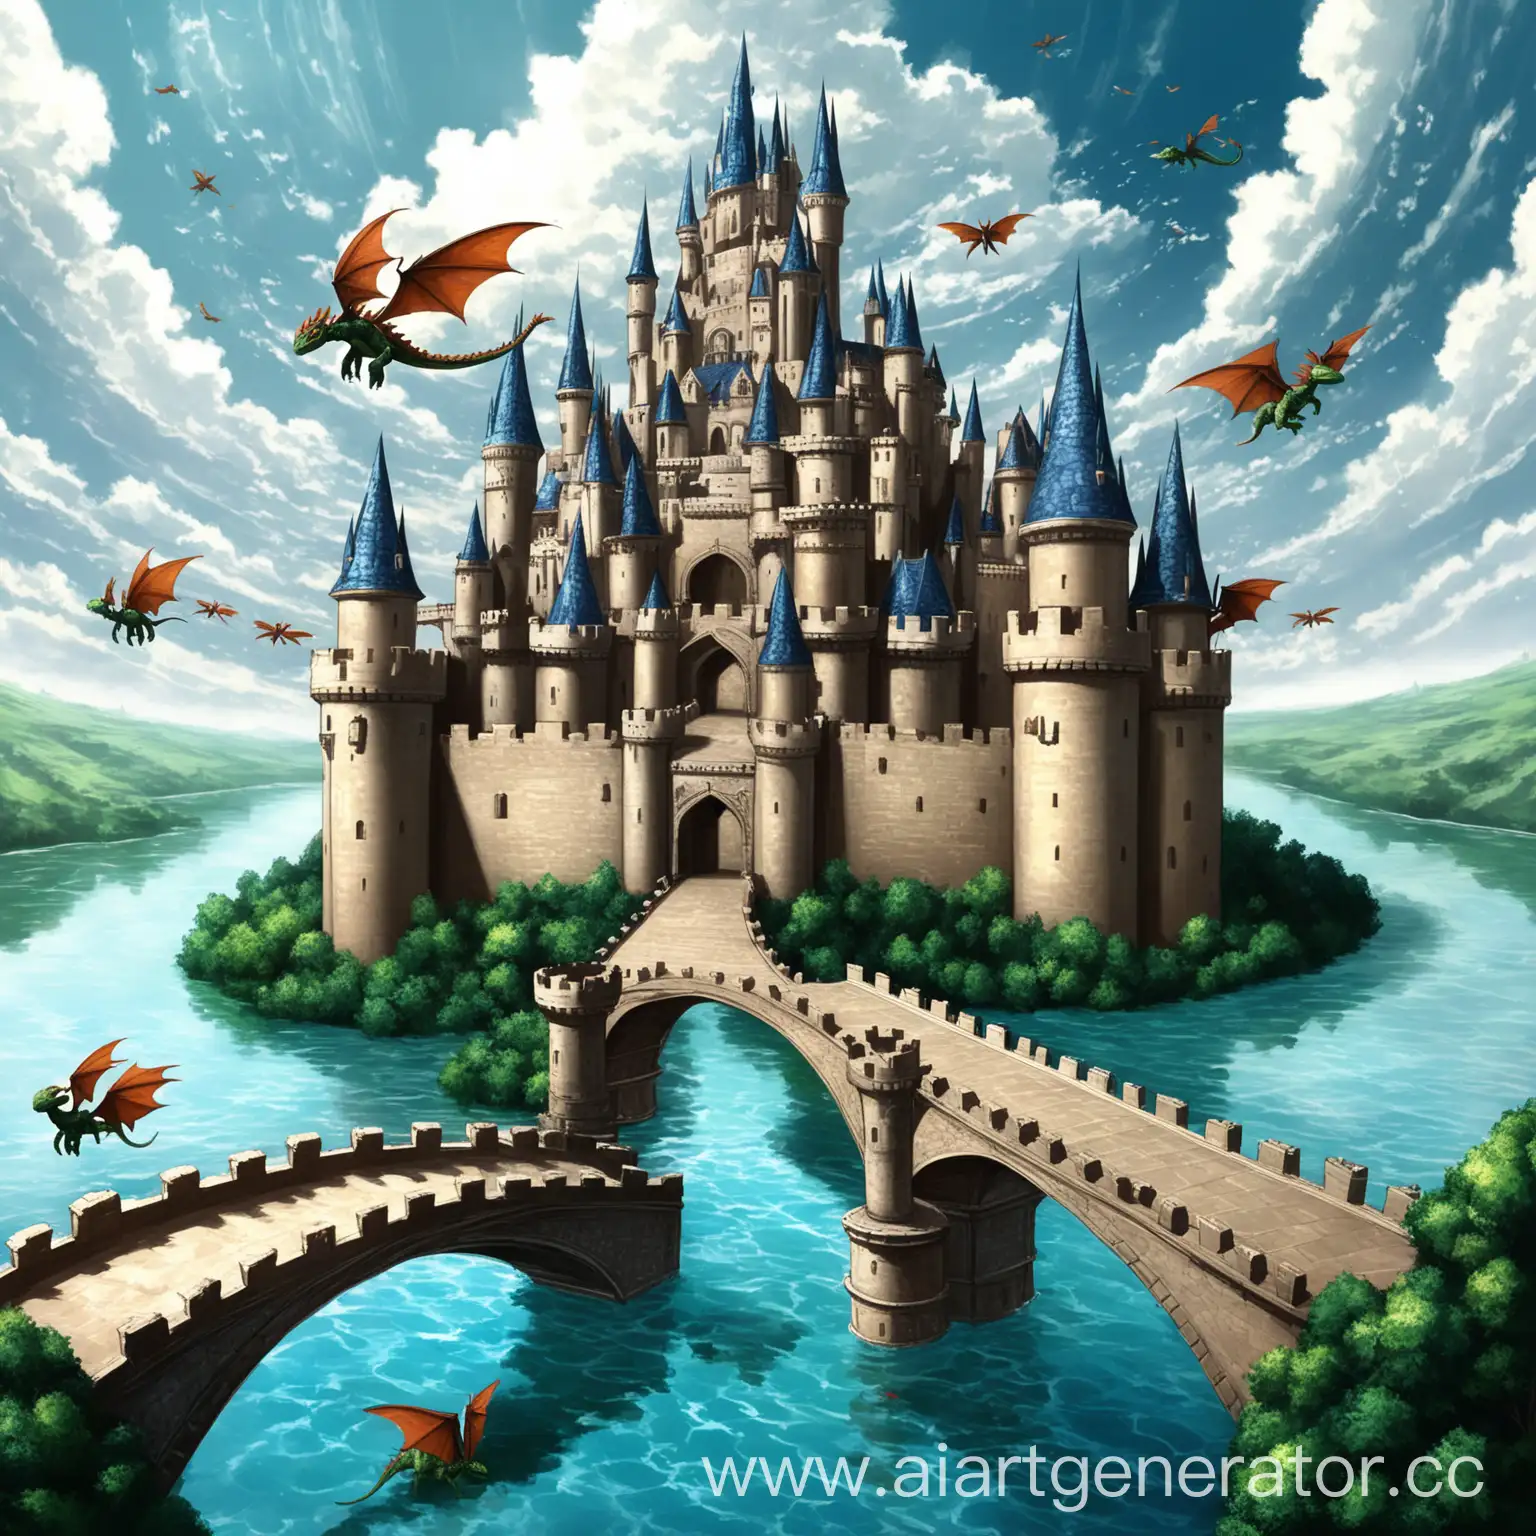 замок большой, вместо крыши шляпа магическая, стены как панцирь черепахи, окружен водой, через воду проложены мостики, рядом с замком есть купол. В небе летают драконы. 